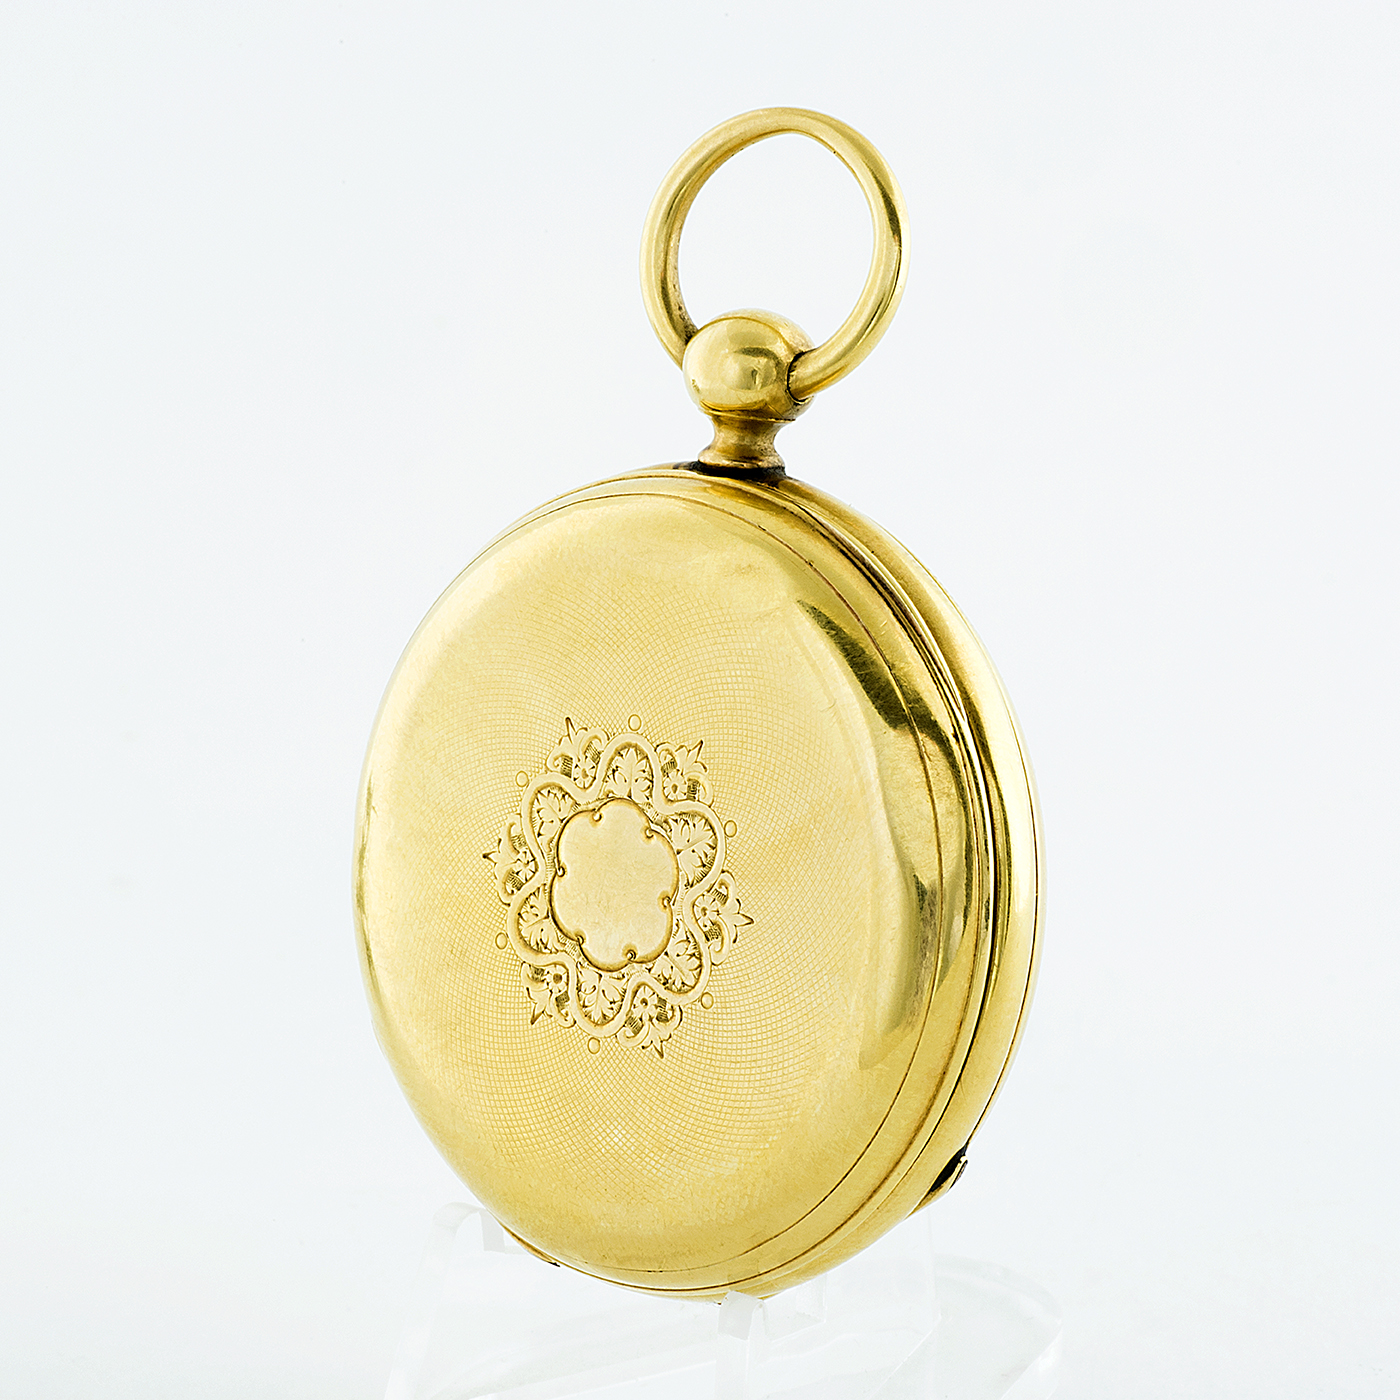 Reloj Suizo de Bolsillo, lepine y remontoir. Ca. 1890. Oro 18k.